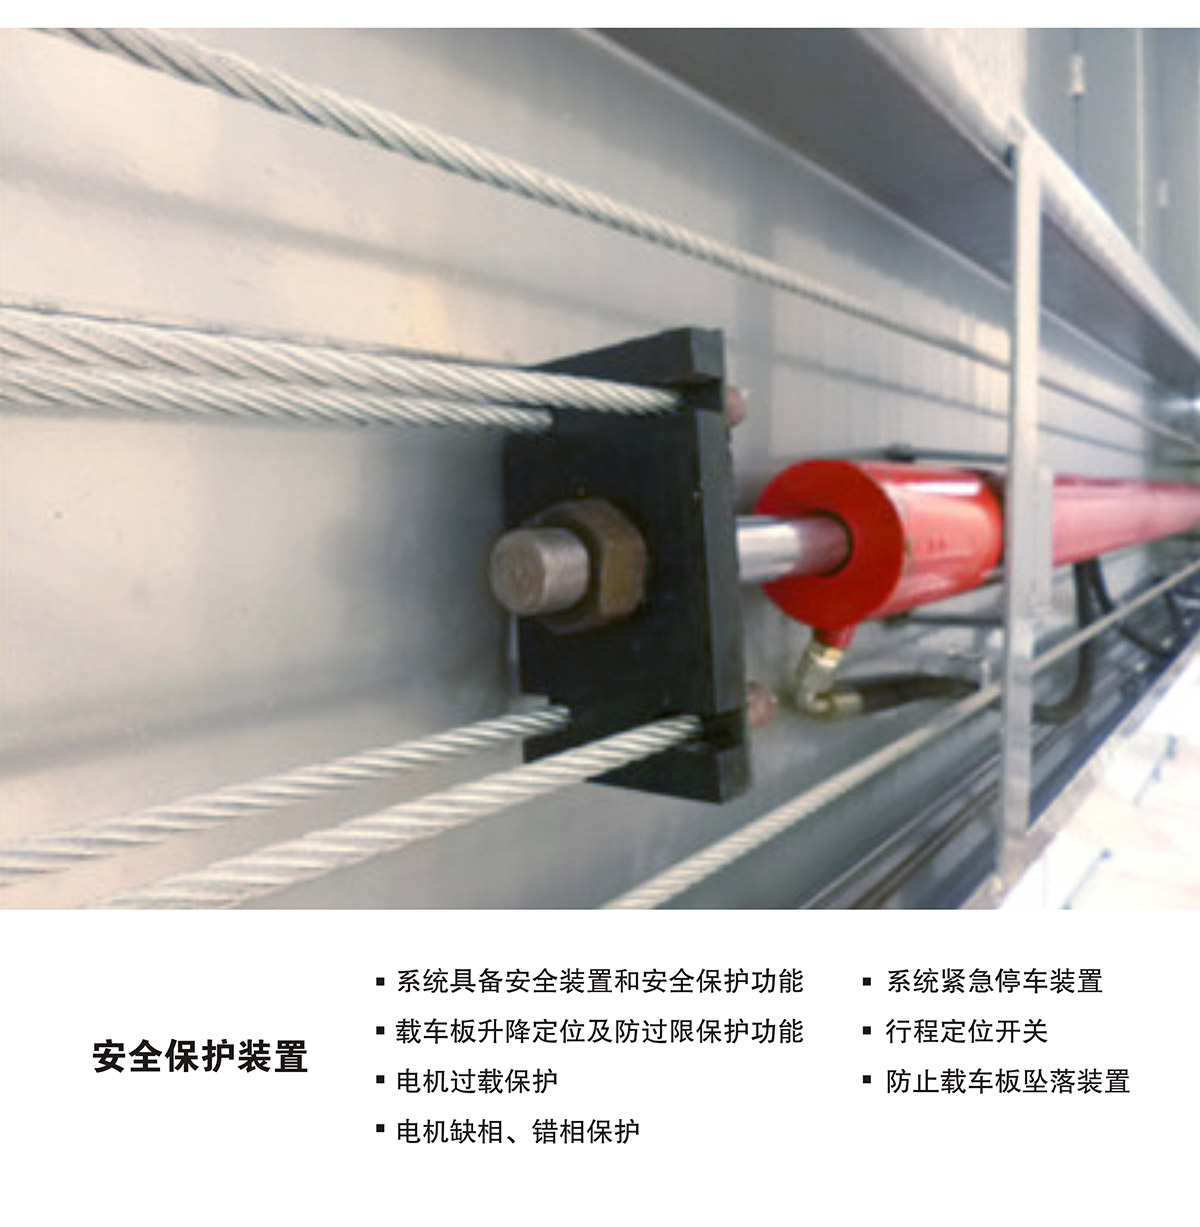 贵阳PJS四柱简易升降立体车库设备安全保护装置.jpg